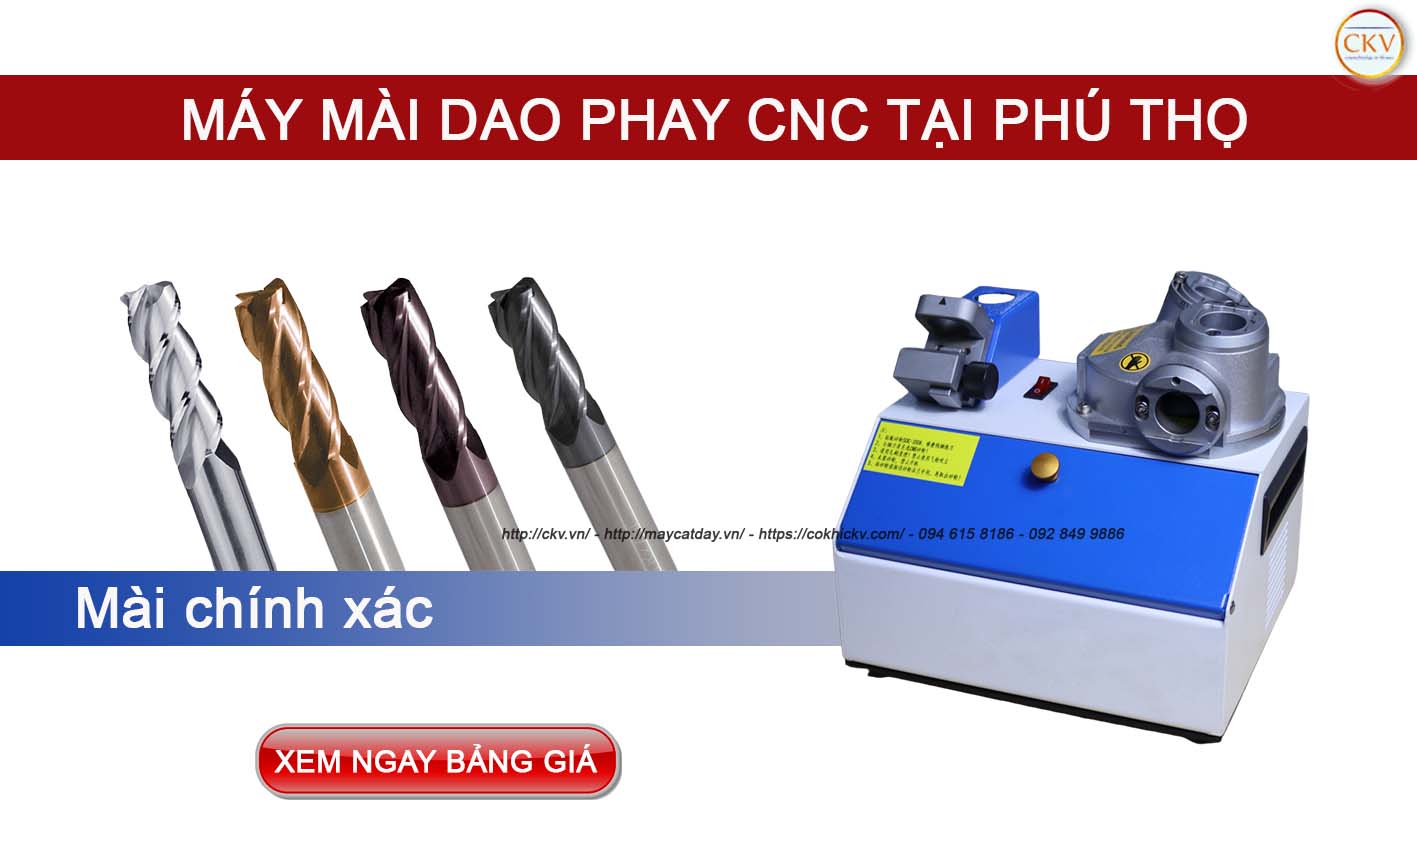 Đại lí máy mài dao phay CNC tại Phú Thọ miễn phí giao hàng tận nơi